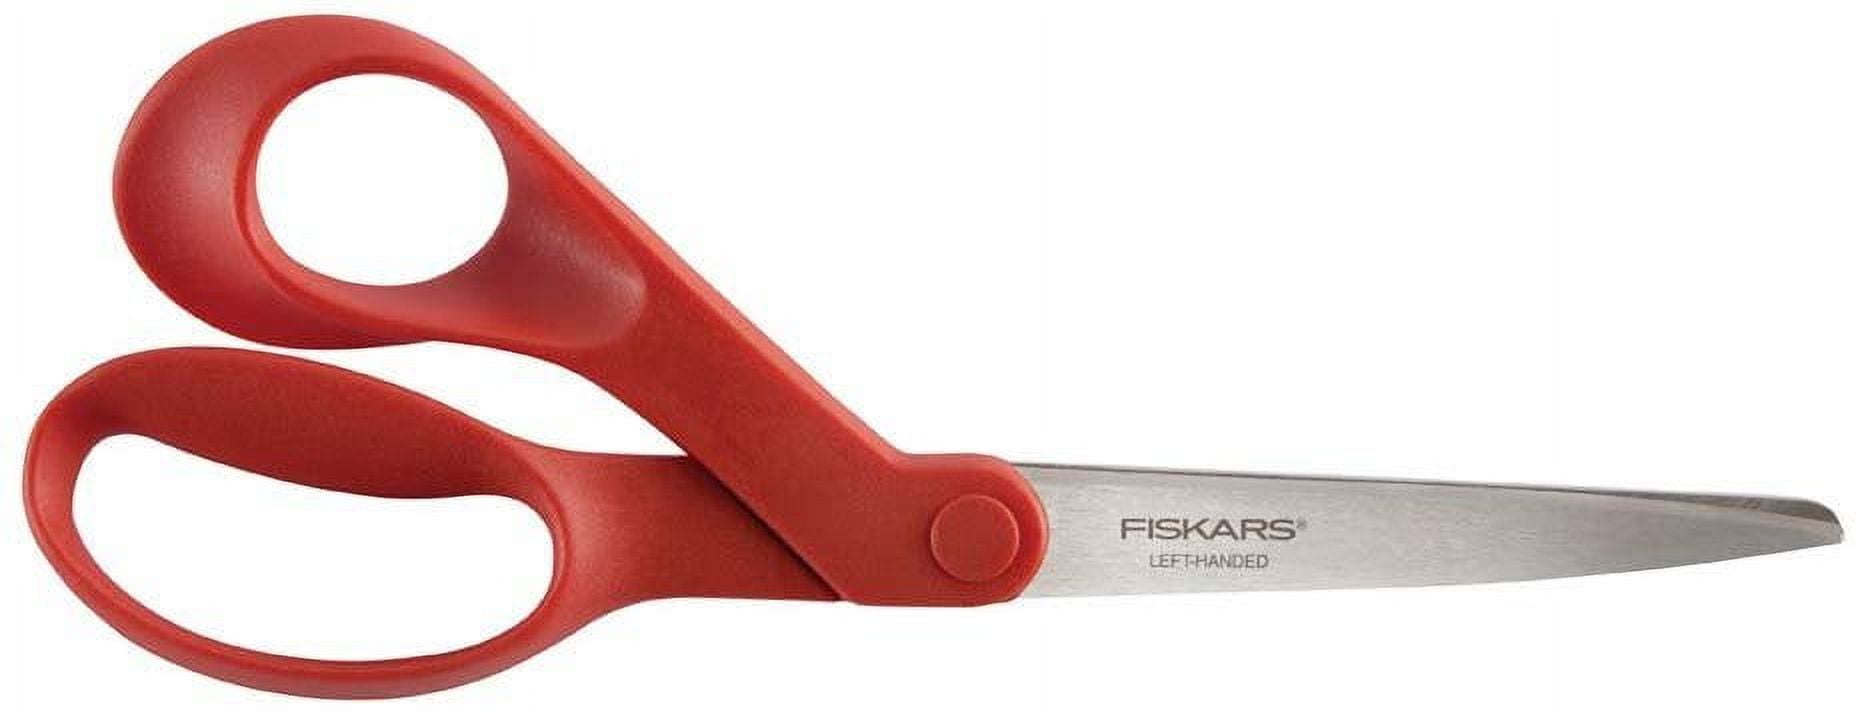 Fiskars 1294508697wj Left-Hand 8 inch Bent-left, Stainless Steel - Orange, Red